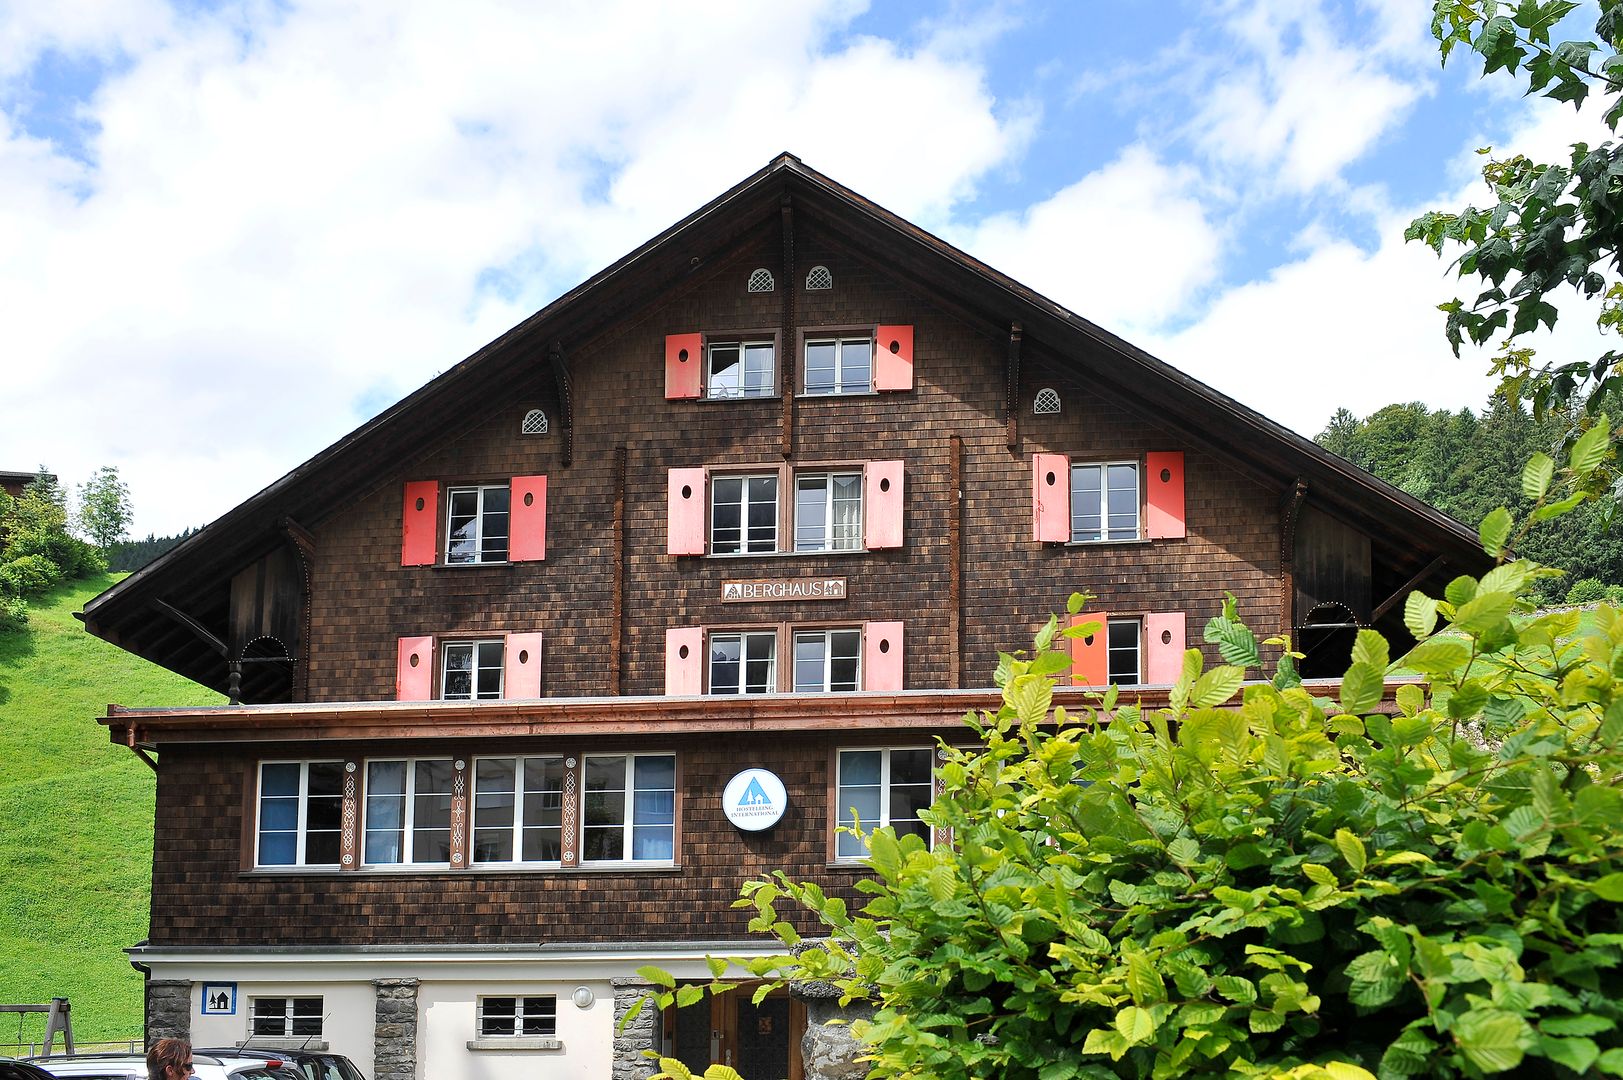 Die Vorderseite einer Ferienunterkunft an der das Schild Berghaus und das Logo der Schweizer Jugendherbergen zu sehen sind.